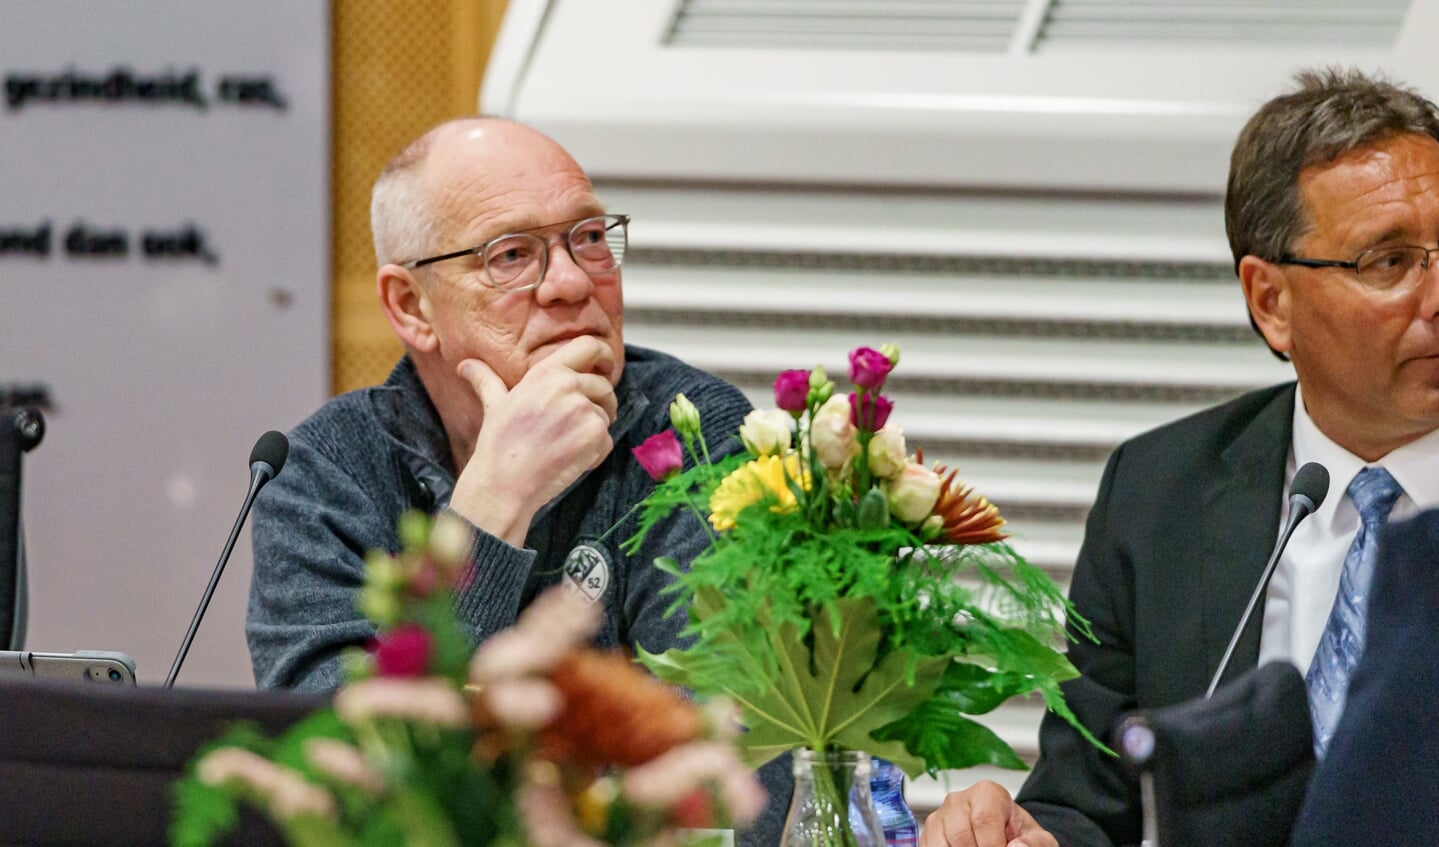 PVV fractievoorzitter Sjaak van Dongen met rechts op de foto de inmiddels uit de fractie gestapte Frank van Boven.